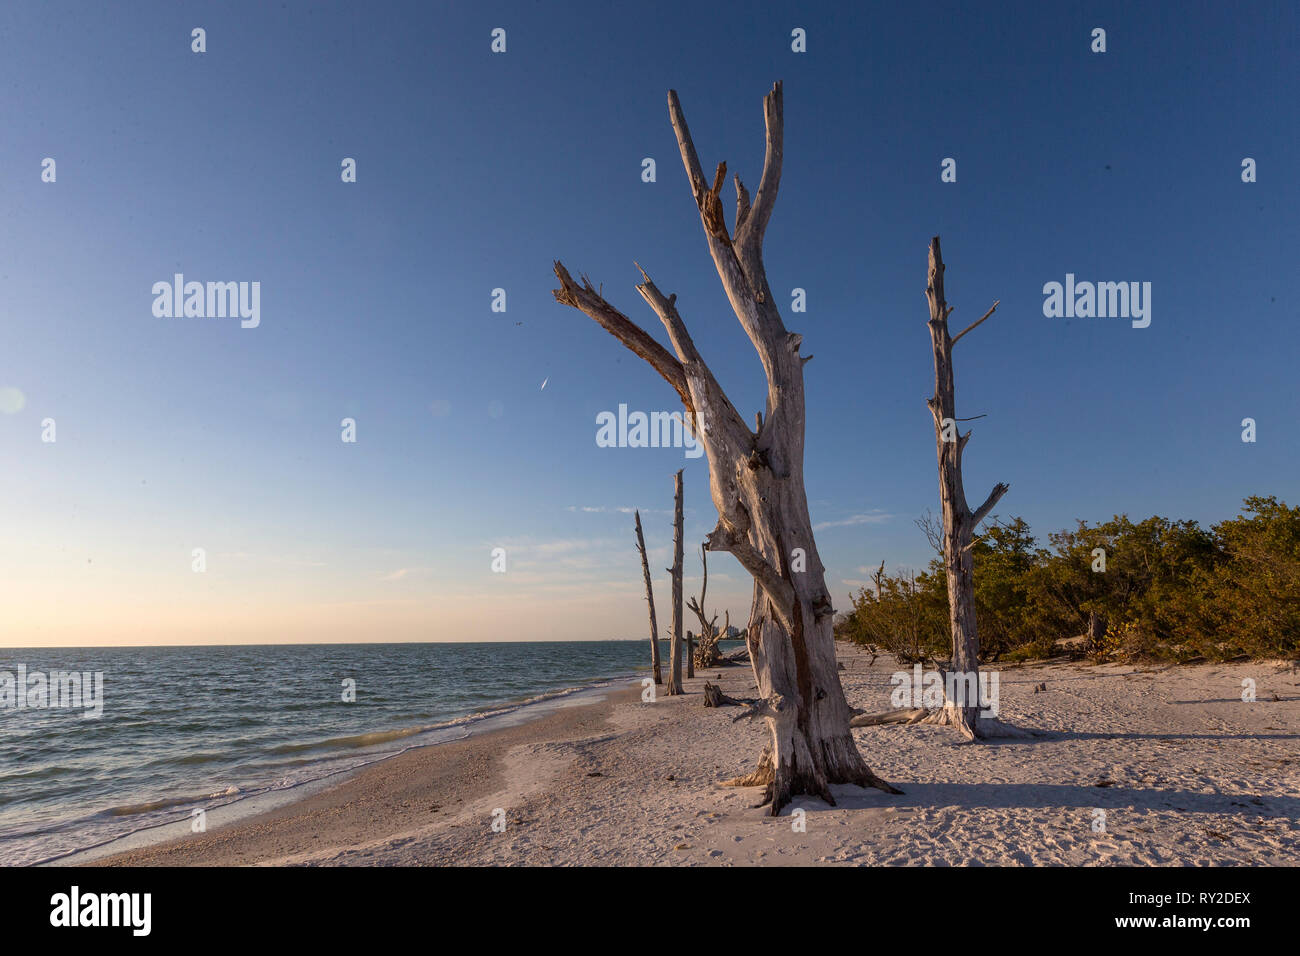 Abgestorbene Mangroven am Strand im Abendlicht bei THEMENBILD Florida, 02.02.2017, 02.02.2017 Bildnachweis: Mario Hommes / HH-Photography Stock Photo